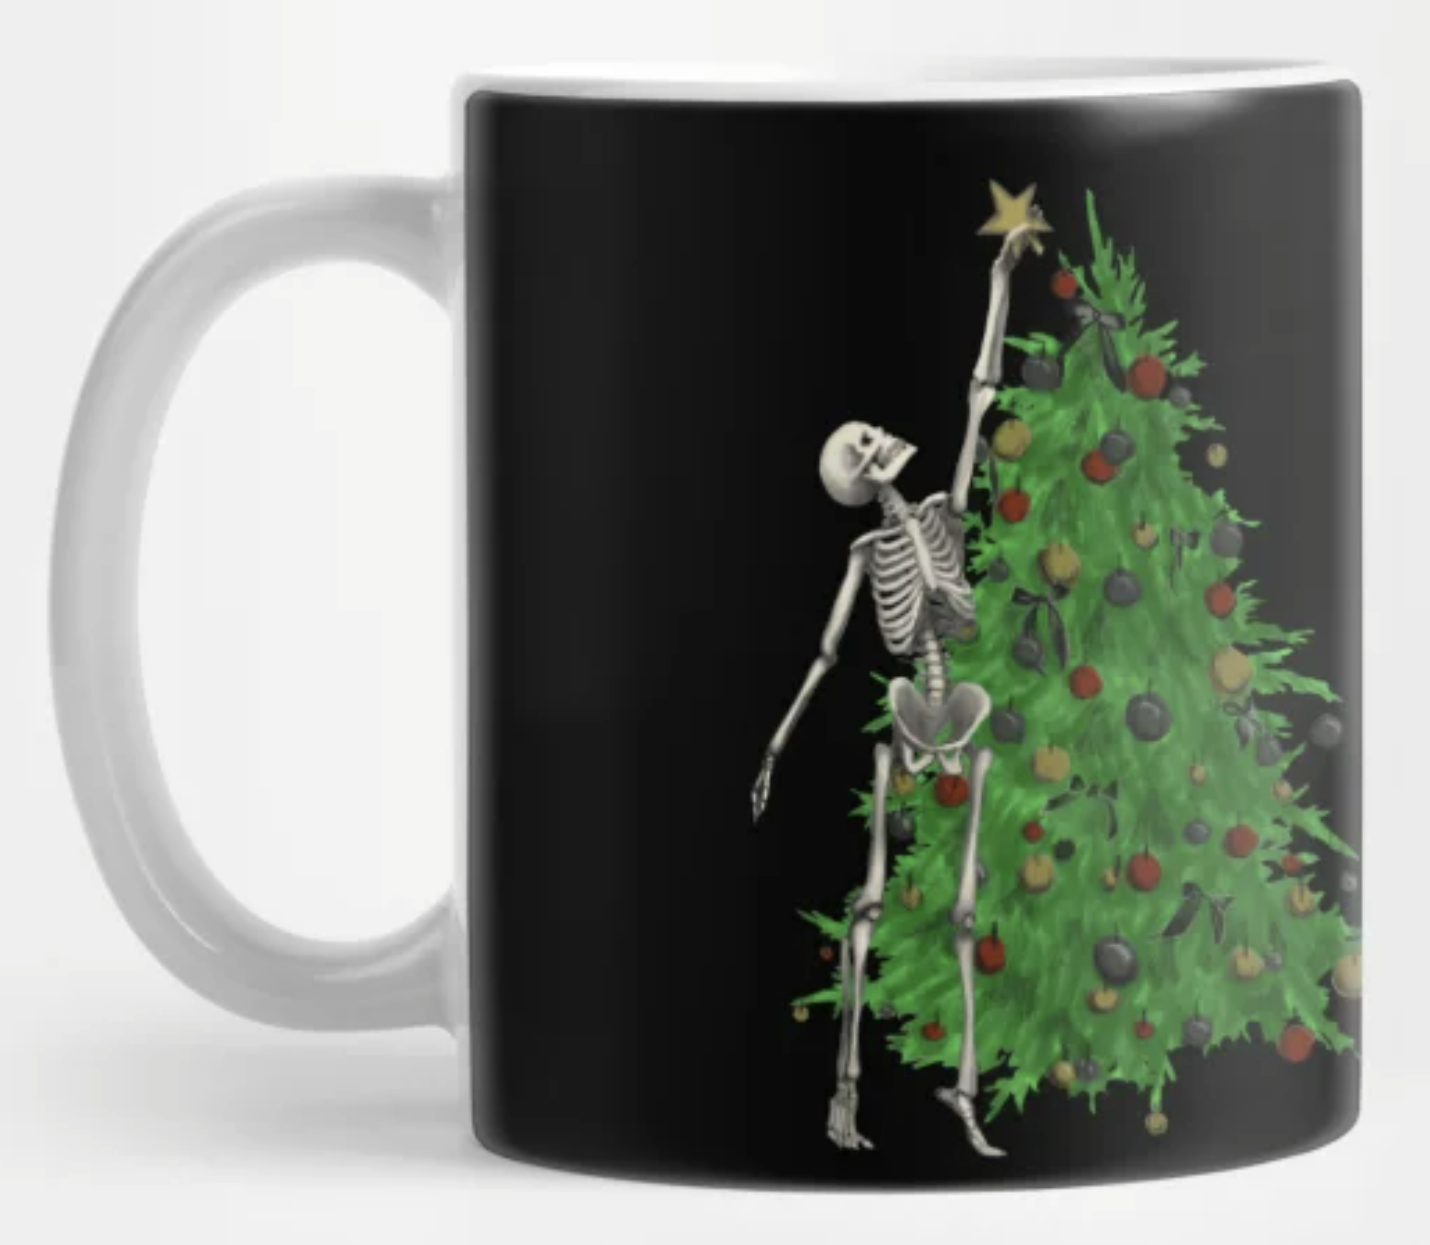 Spooky Coffee Mug